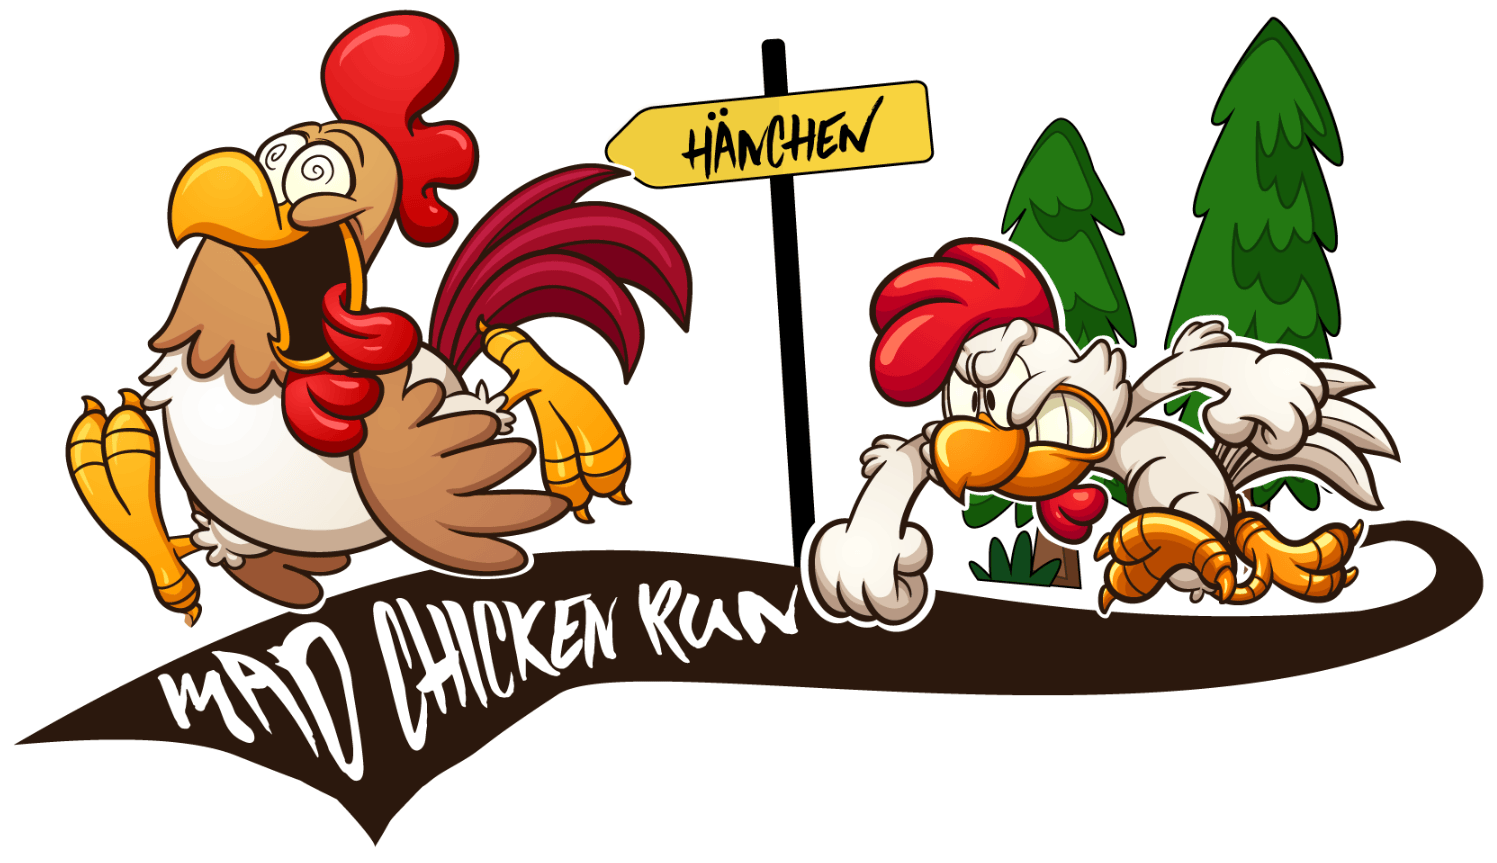 (c) Mad-chicken-run.de